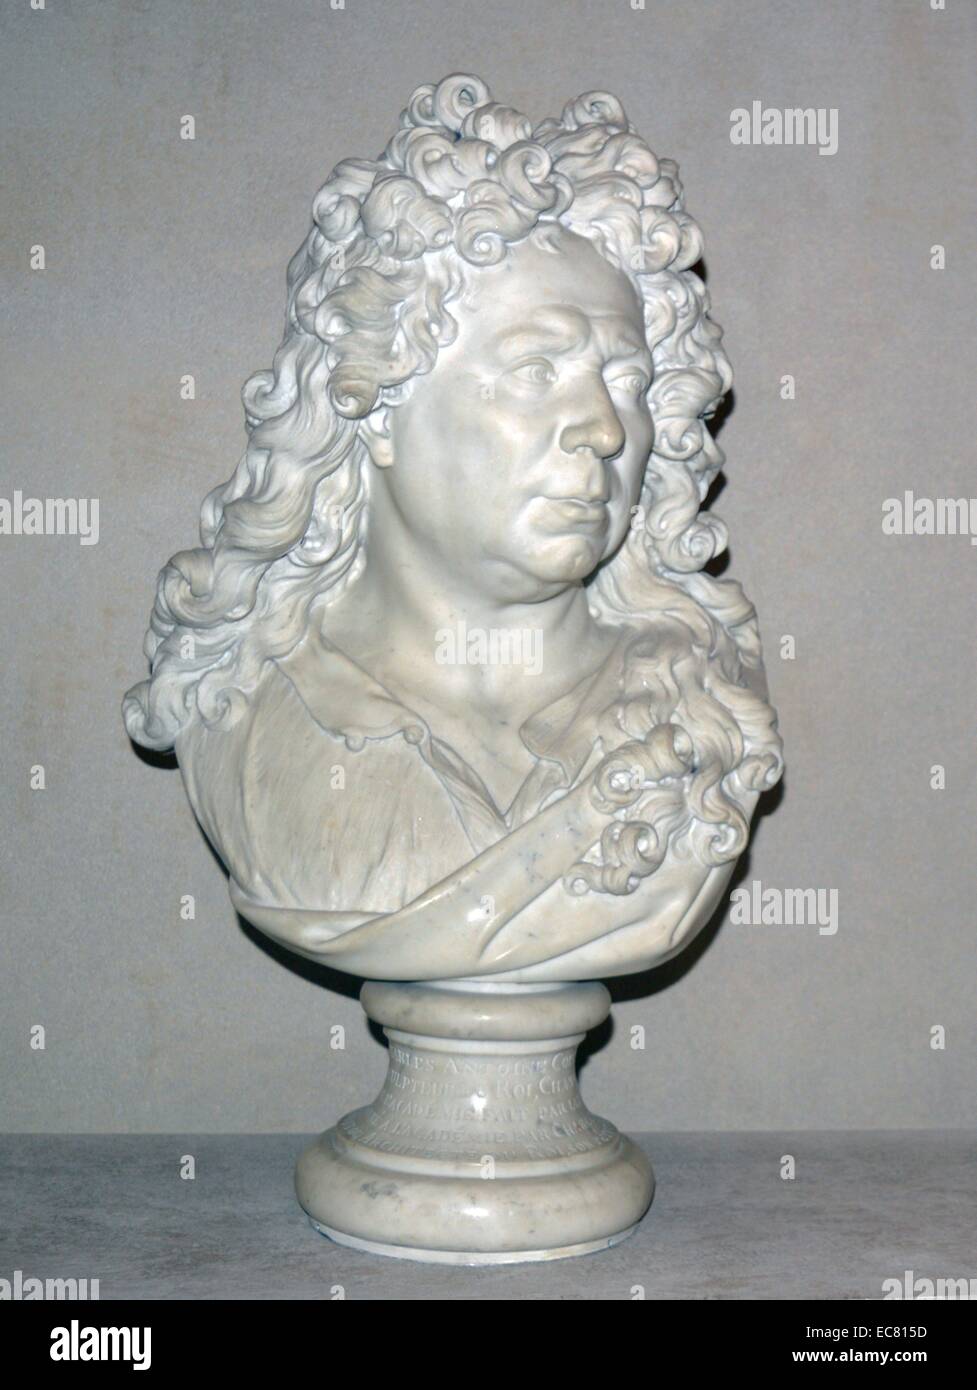 Marmorstatue von Antoine Coypel (1661-1722) war eine Geschichte Maler, den berühmten Sohn des französischen Malers, Noel Coypel. Vom 17. Jahrhundert. Stockfoto